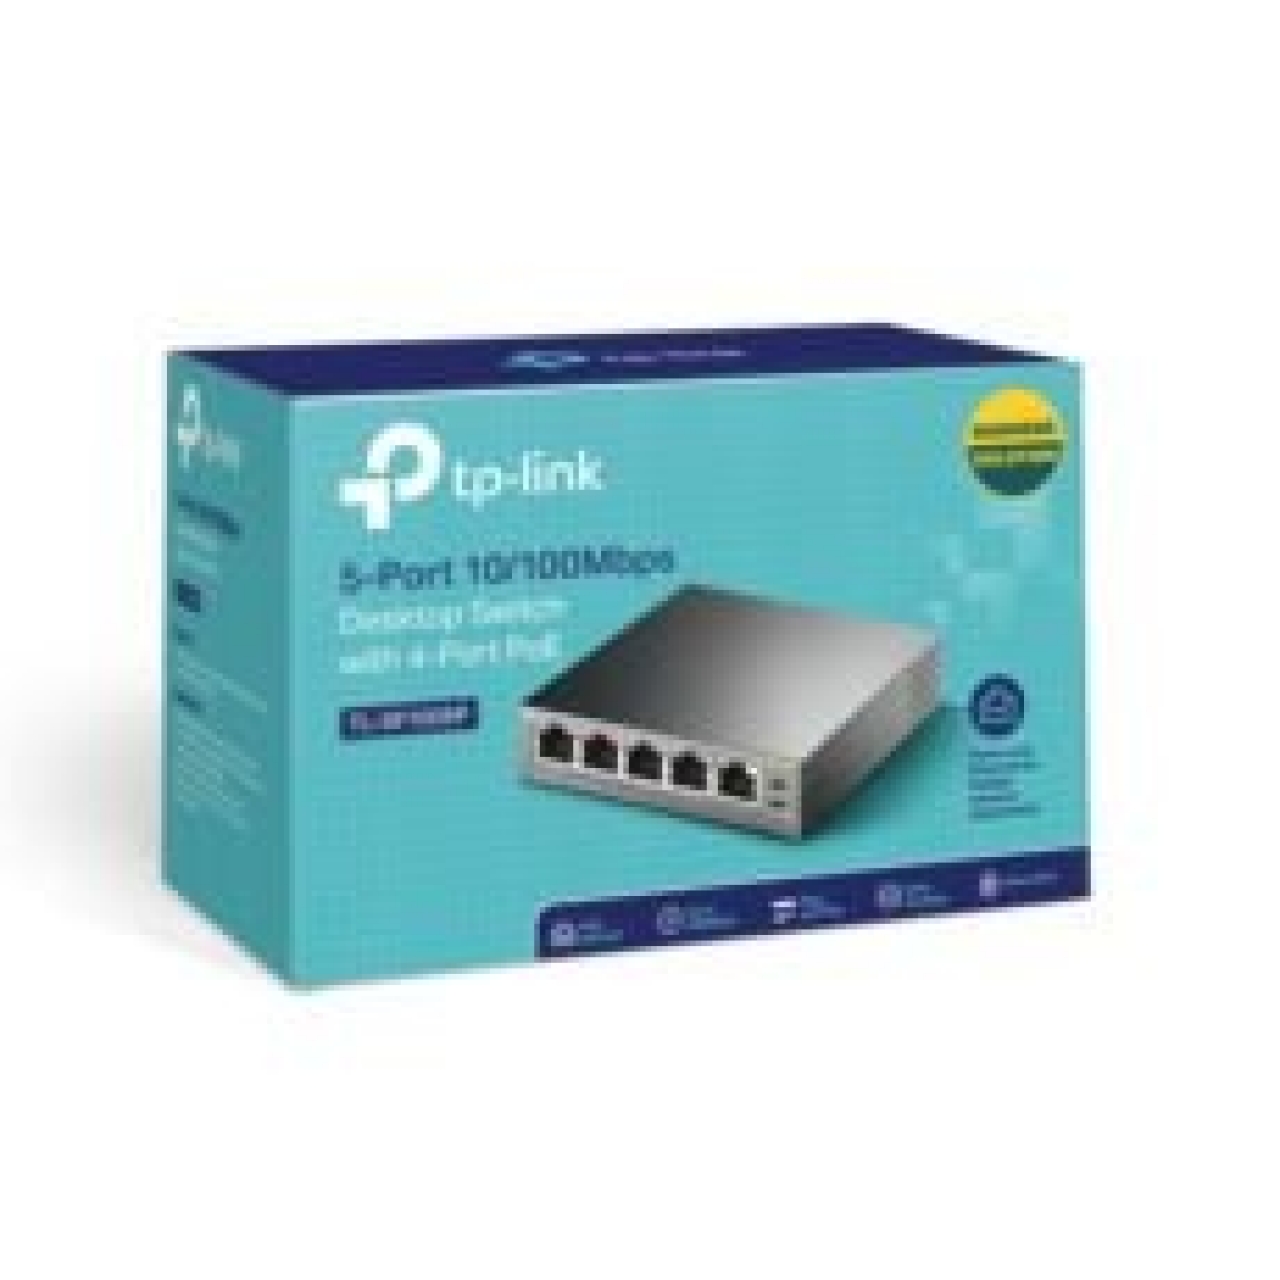 TP-LINK 5 PORT 10-100Mbps Switch 4 PORT PoE